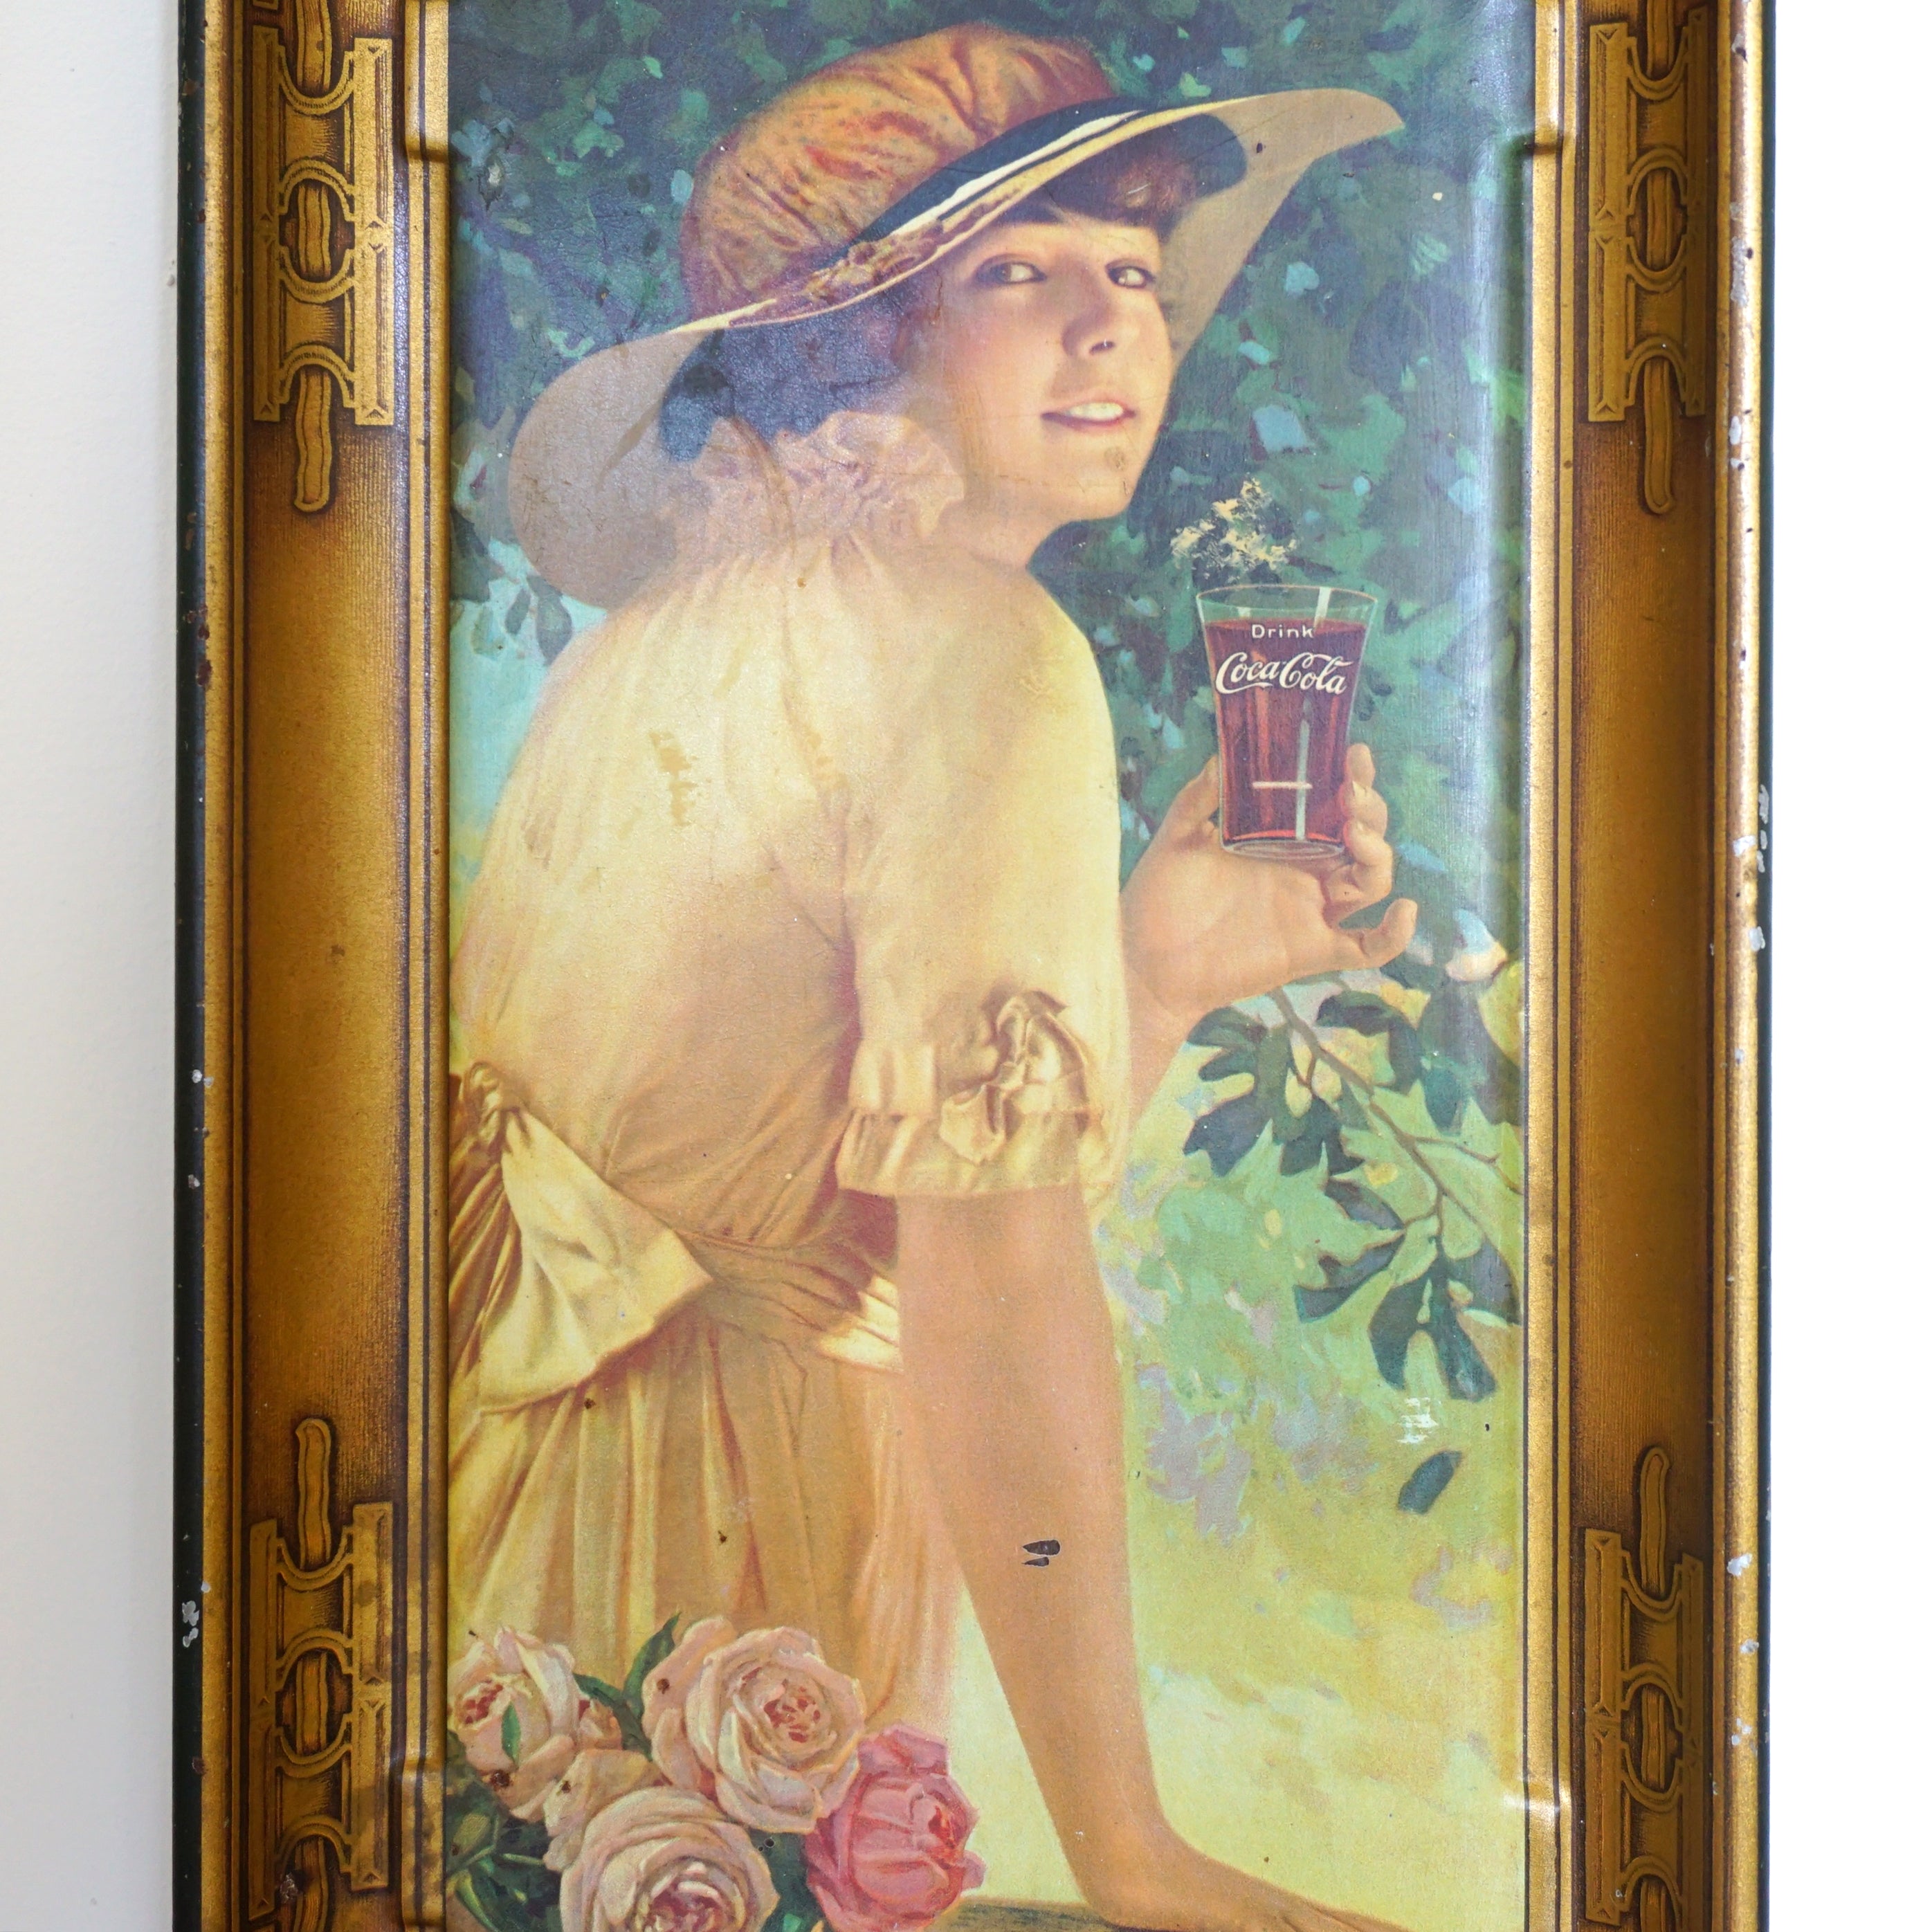 1910s Original Antique "Elaine" Coca-Cola Stelad Signs Tray